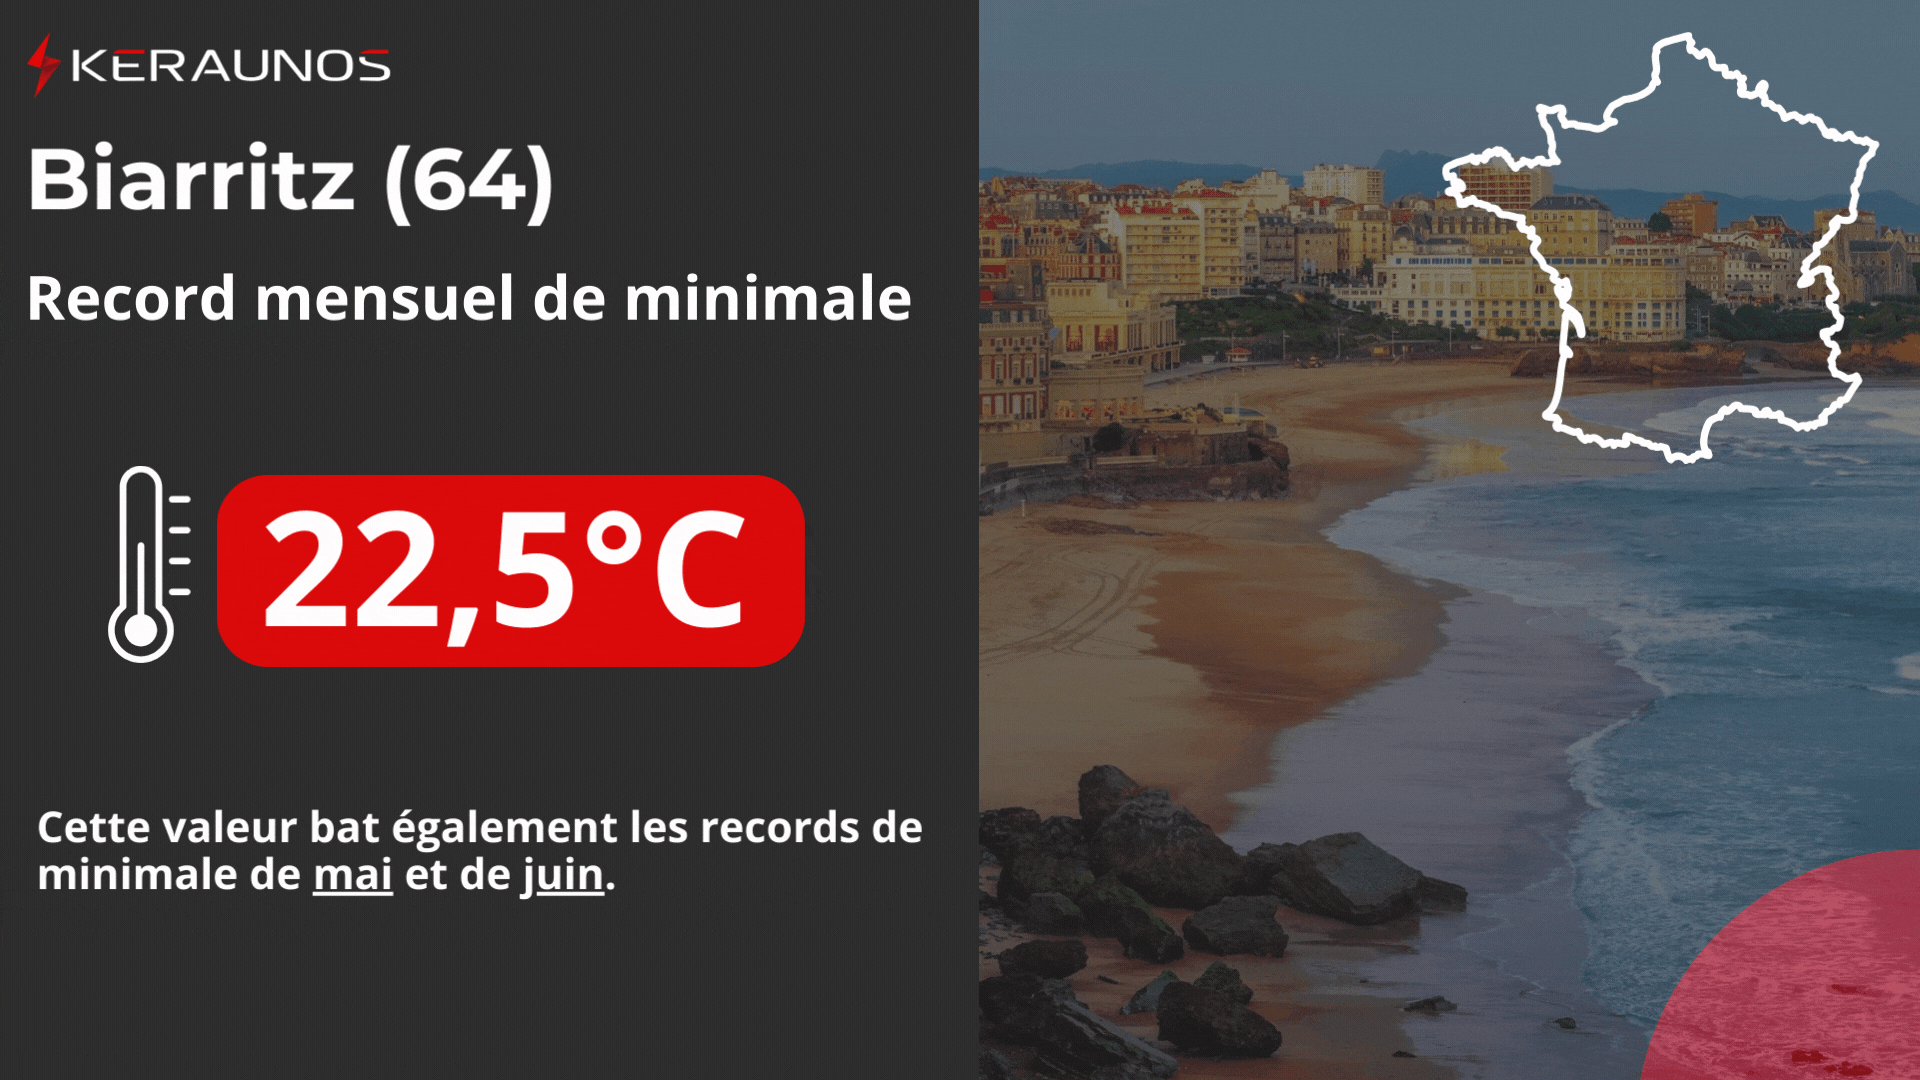 <p>Minimale record spectaculaire de 22.5°C validée à 18h UTC à Biarritz. Cette valeur est 14°C au-dessus de la normale et représente une véritable anomalie climatologique pour avril. Ces 22.5°C battent également les records de minimale de mai et de juin à Biarritz.</p>